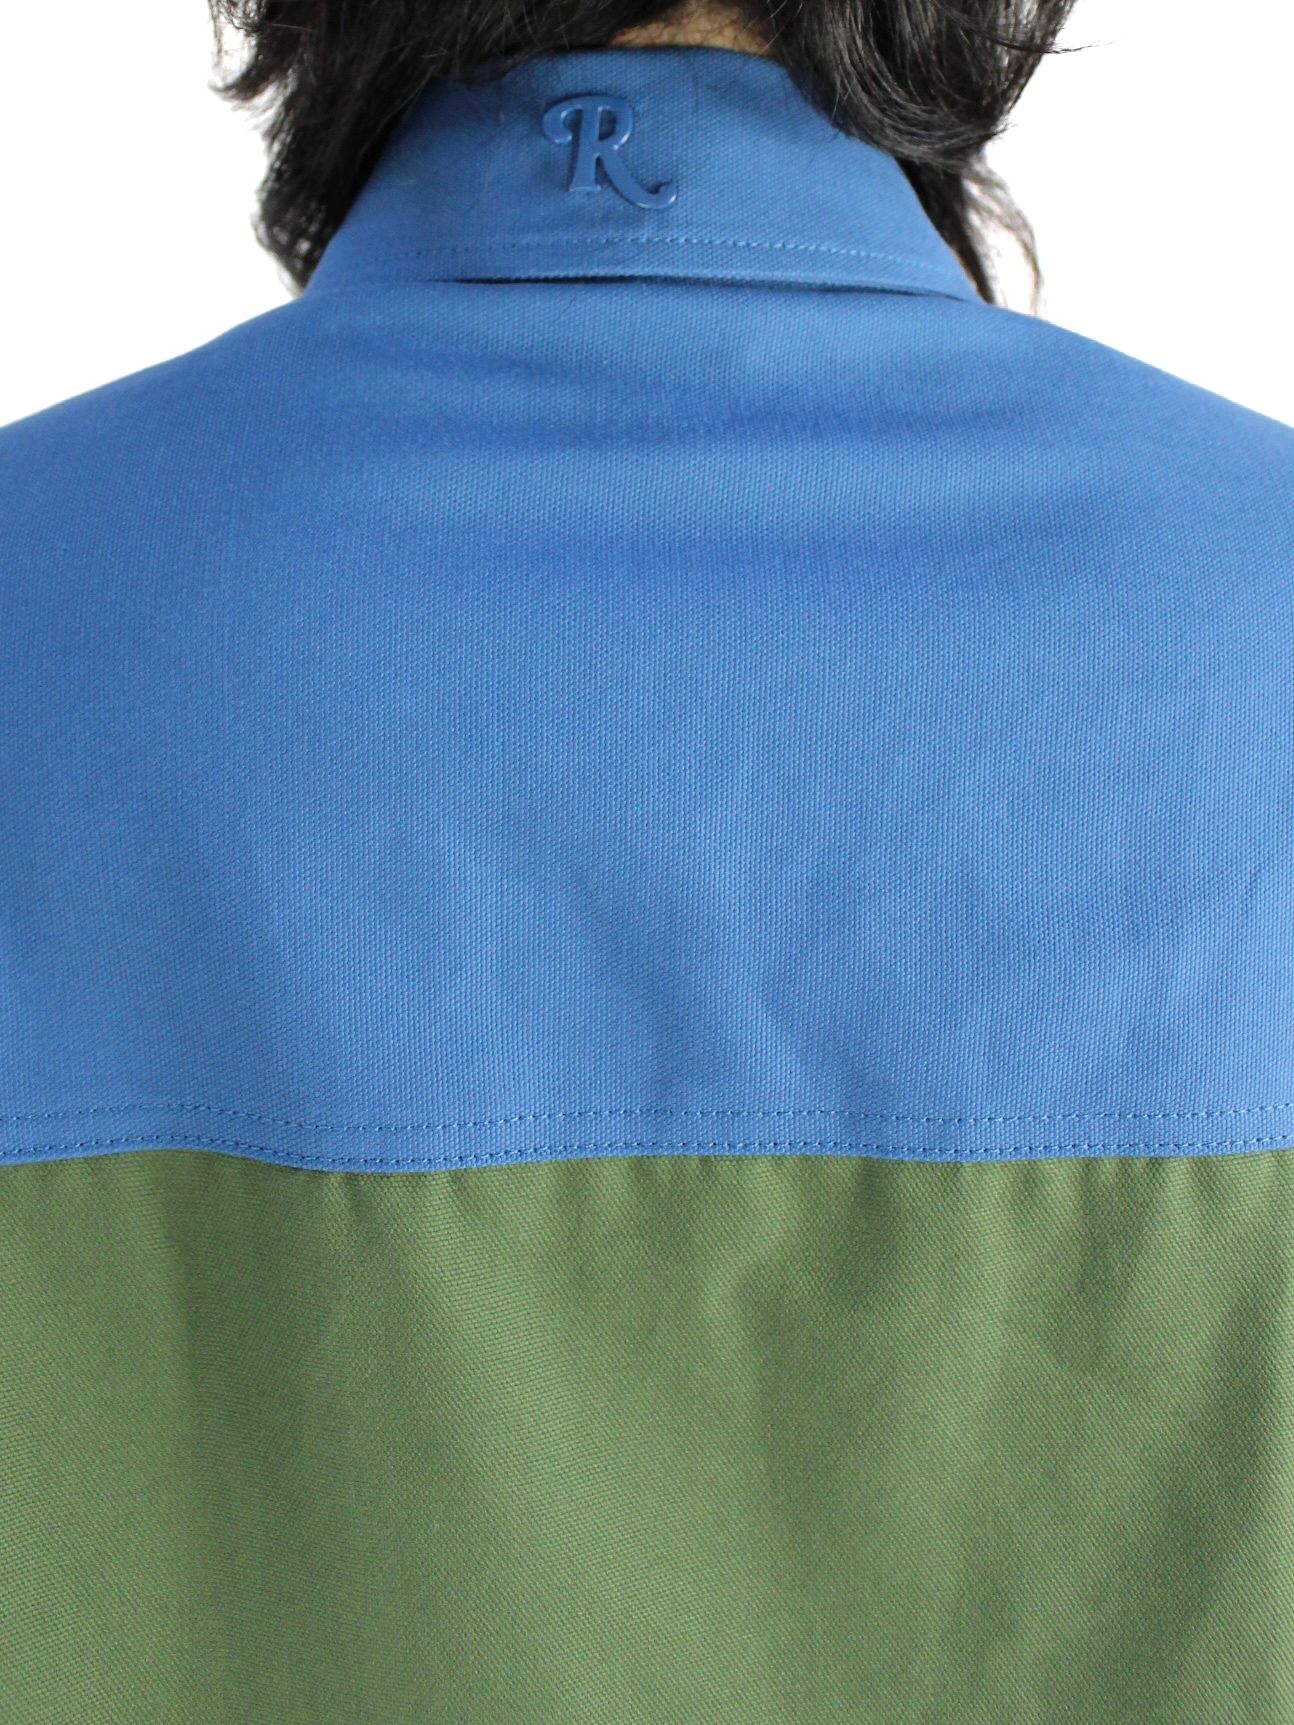 【22AW】ロゴパッチ Rピン ビッグフィット バイカラーデニムシャツ / Oversized bicolor denim shirt with R  pin in back / カーキ × ブルー - XS - カーキ×ブルー